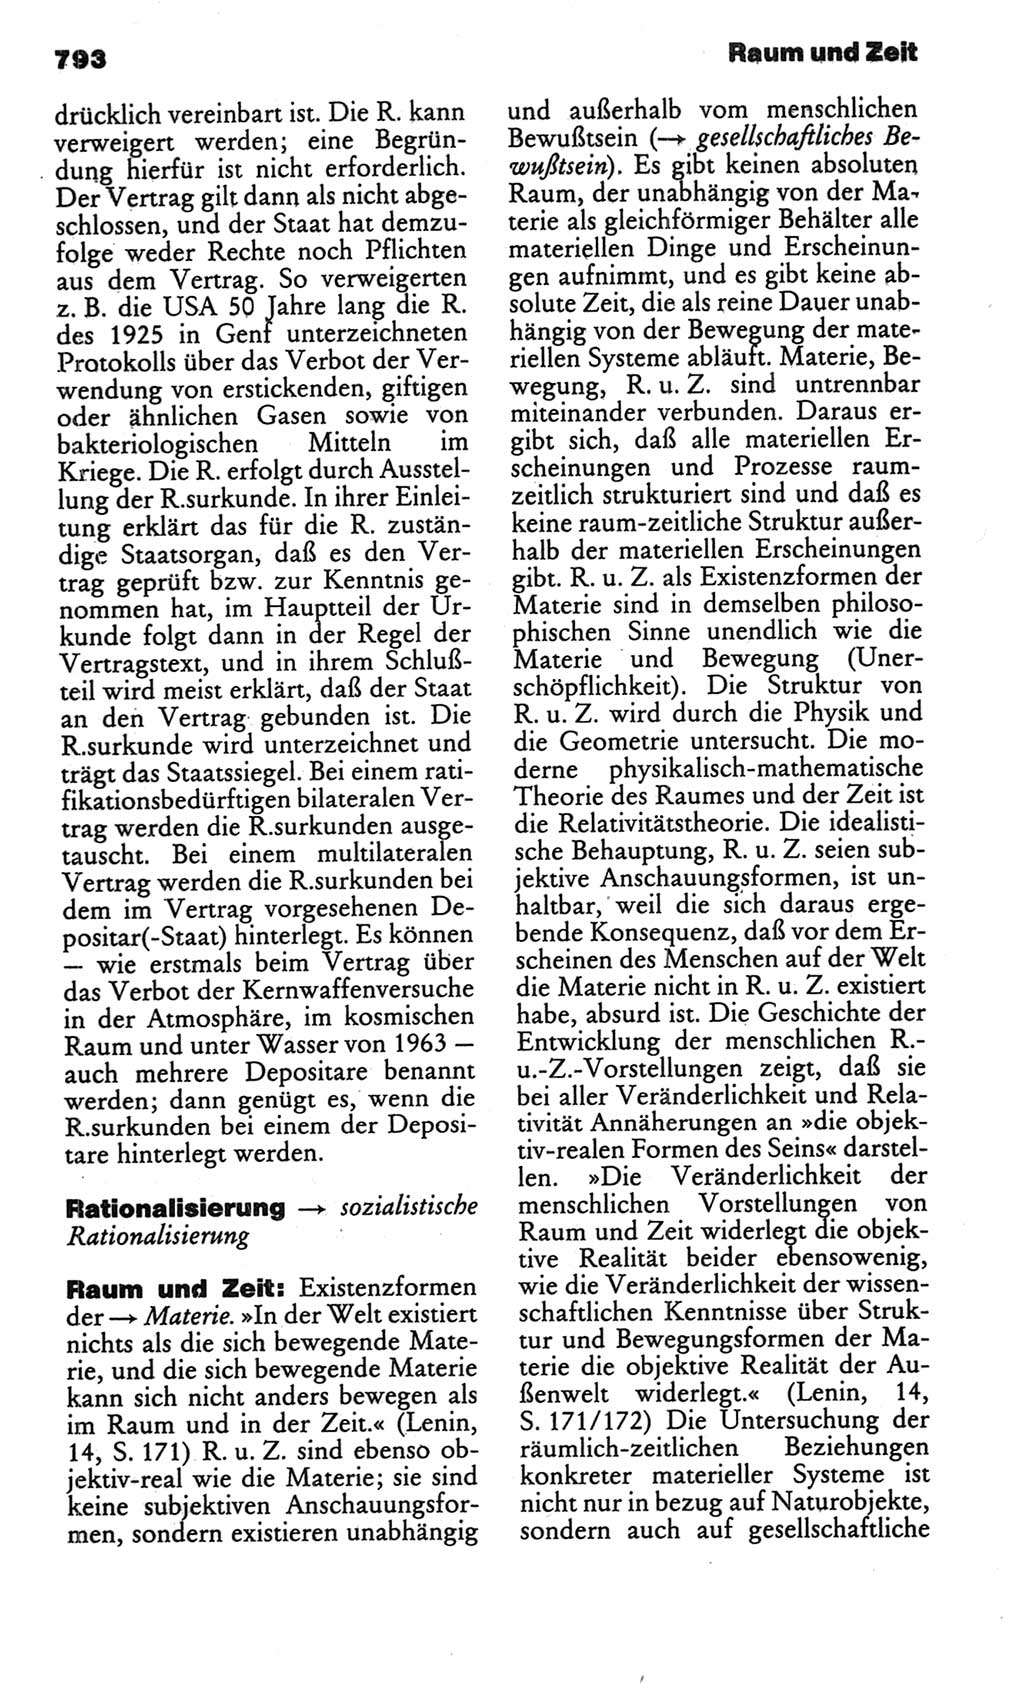 Kleines politisches Wörterbuch [Deutsche Demokratische Republik (DDR)] 1986, Seite 793 (Kl. pol. Wb. DDR 1986, S. 793)